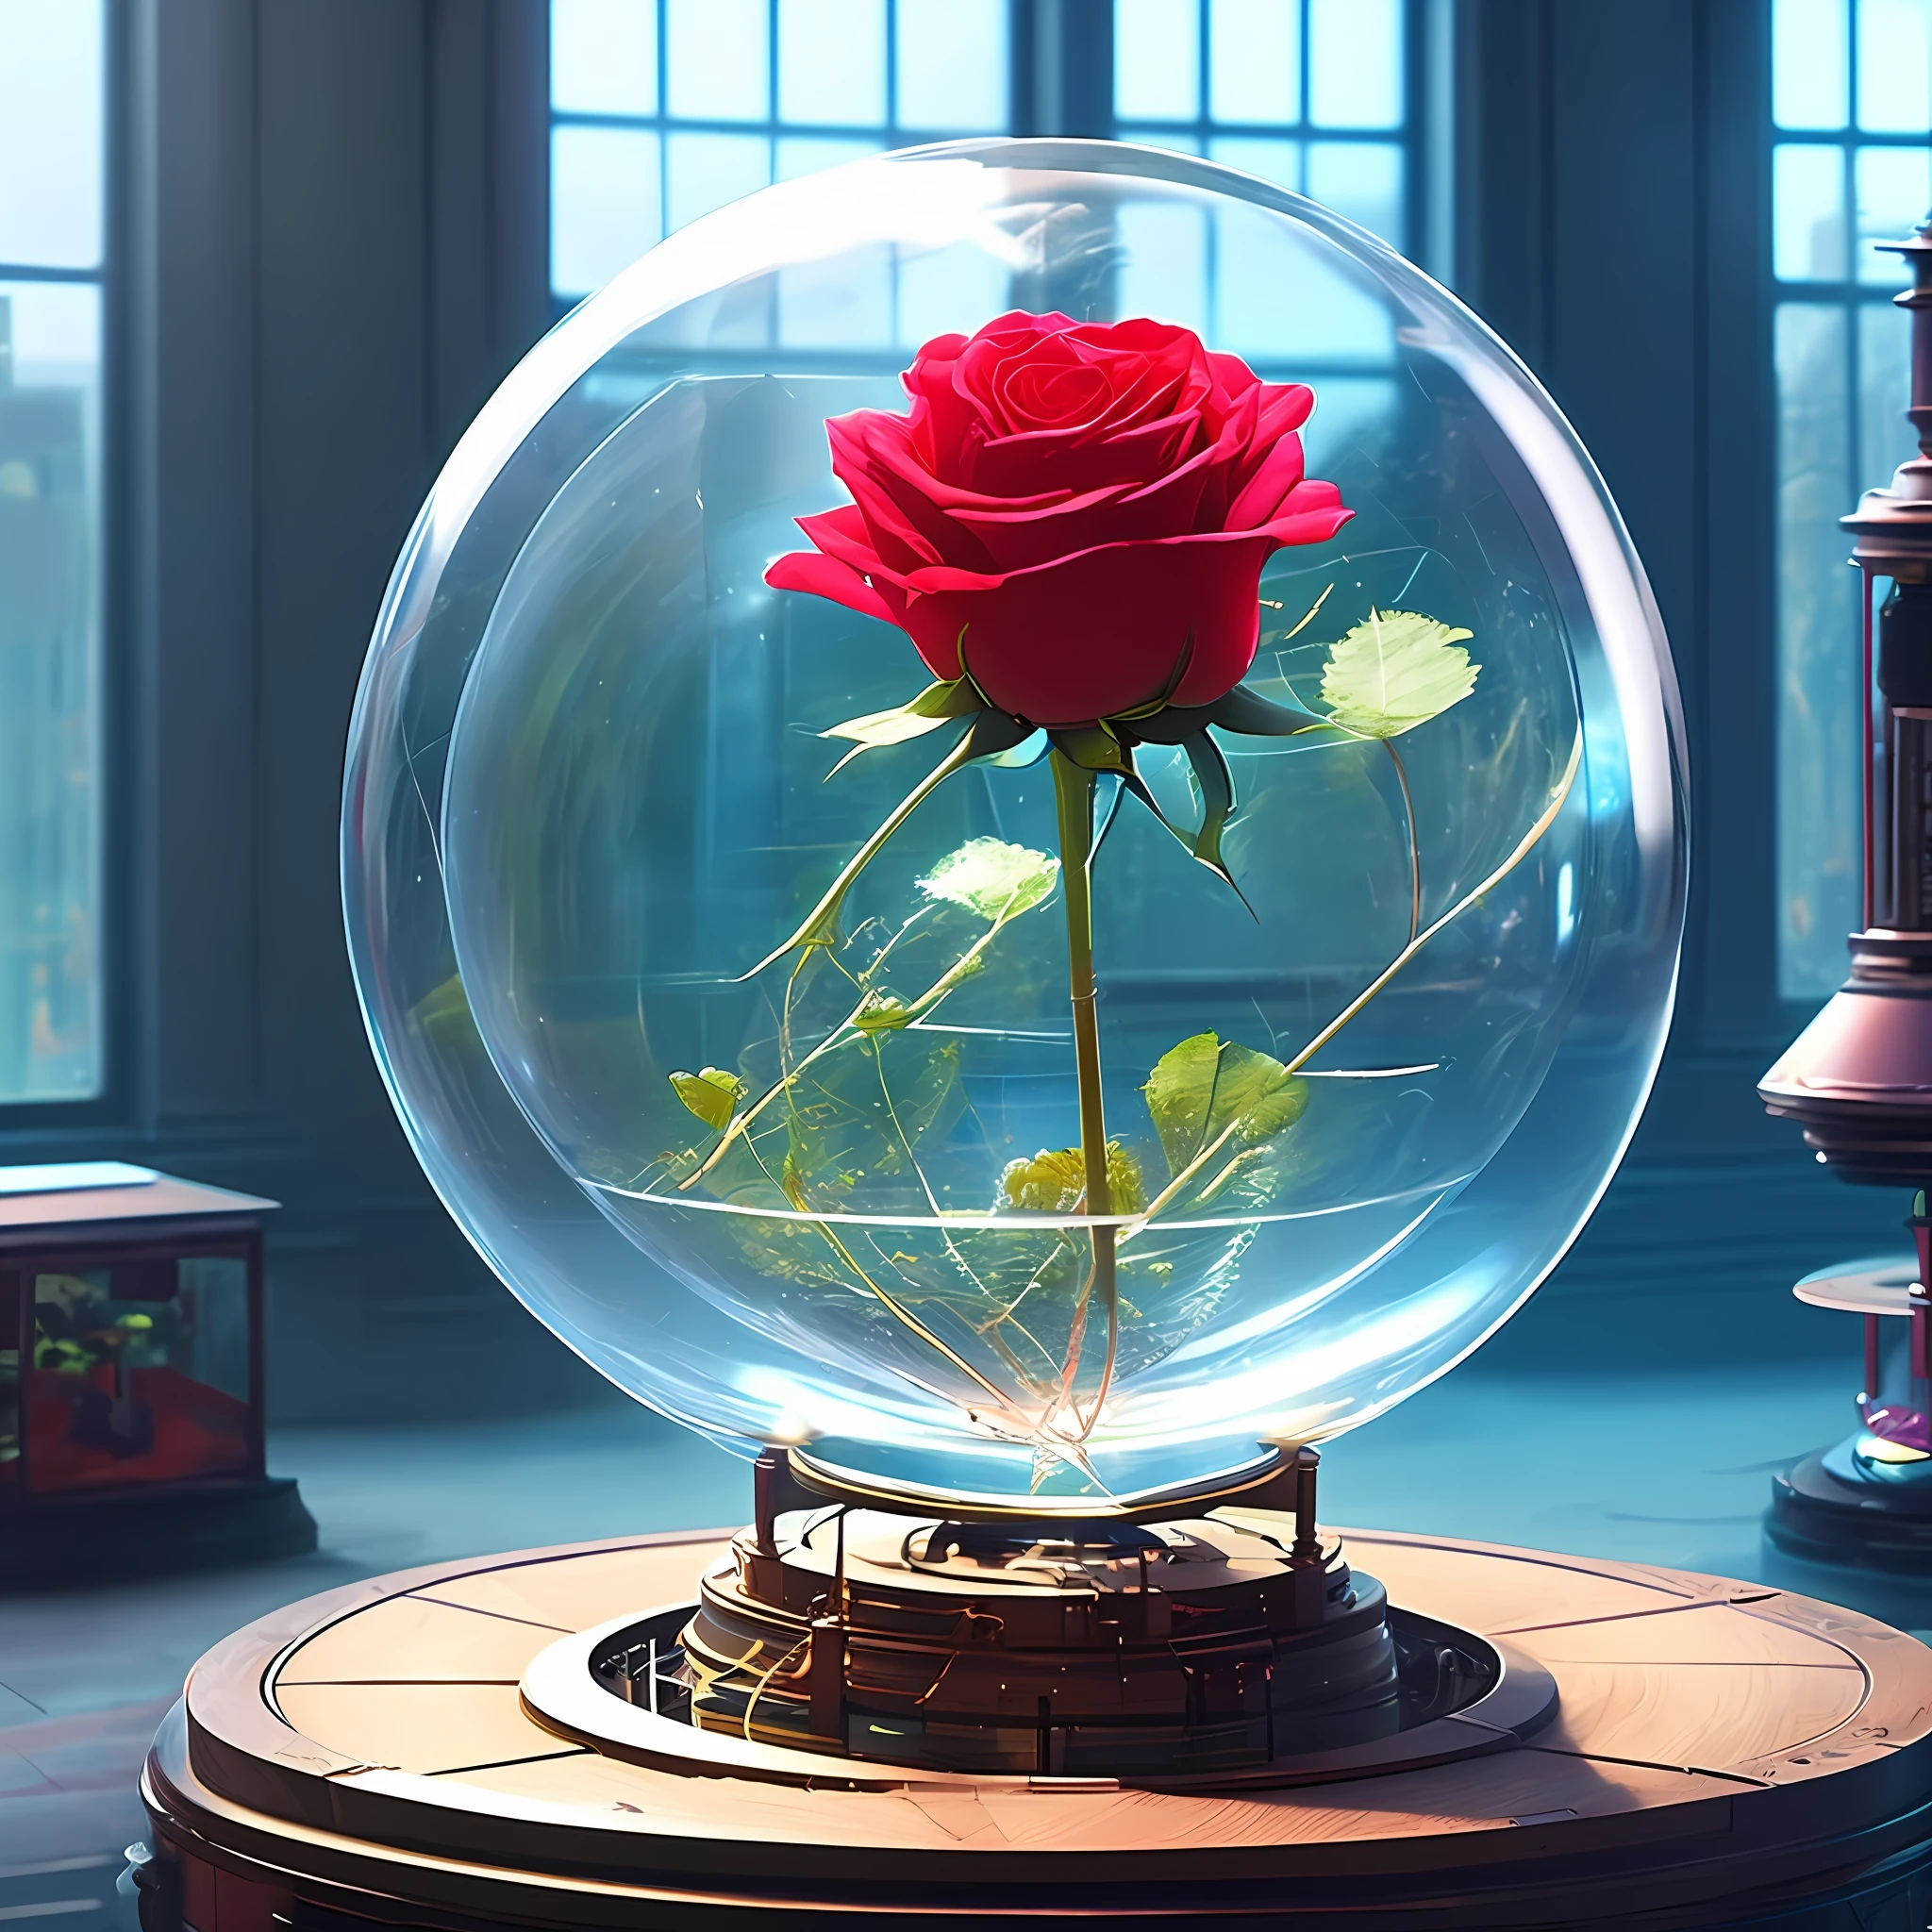 there is a rose floating in a 玻璃圓頂 on a music box base, 憂鬱玫瑰柔和, 優雅的光芒, 红玫瑰, 透明玻璃花瓶, 優雅的女士, 玻璃圓頂s, 自然點玫瑰&#39;, 燈光優美, 優雅的光芒, 雍容華貴, 罗莎莉亚, 玻璃圓頂, 美麗的照明, 在一個短圓形玻璃花瓶裡,  巨型机械玫瑰, 科幻小说, 发明, 科幻, 复古未来主义